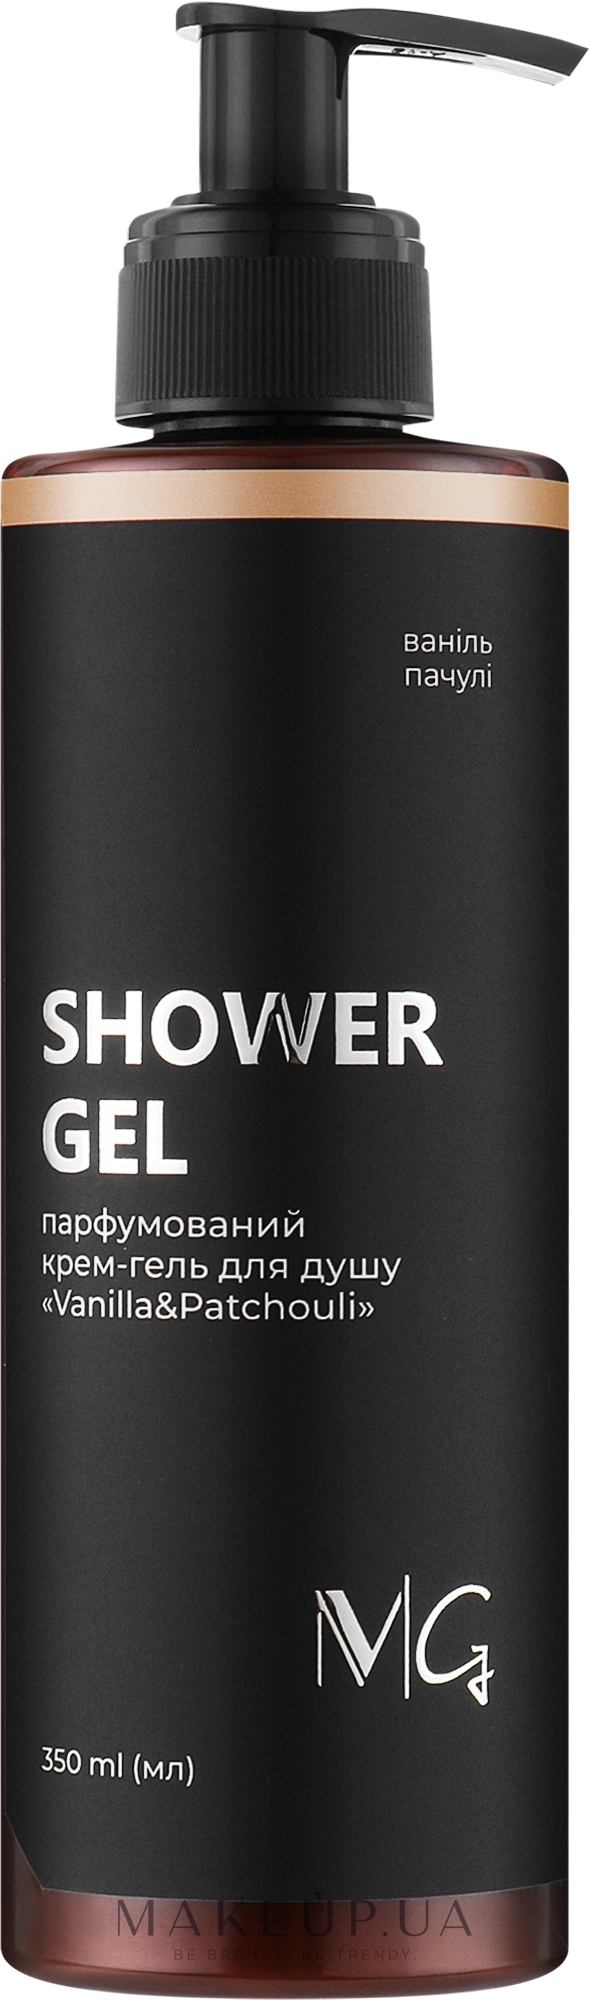 Парфюмированный крем-гель для душа "Vanilla & Patchouli" - MG Shower Gel — фото 350ml